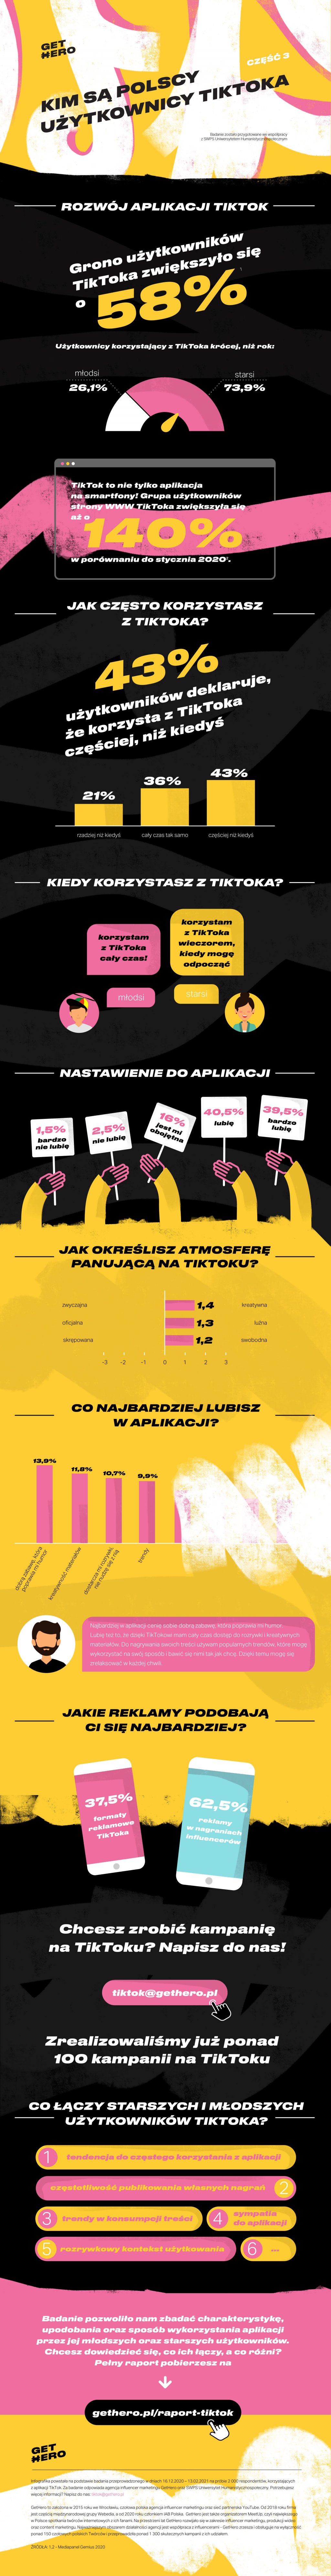 tiktok - polscy użytkownicy raport infografika